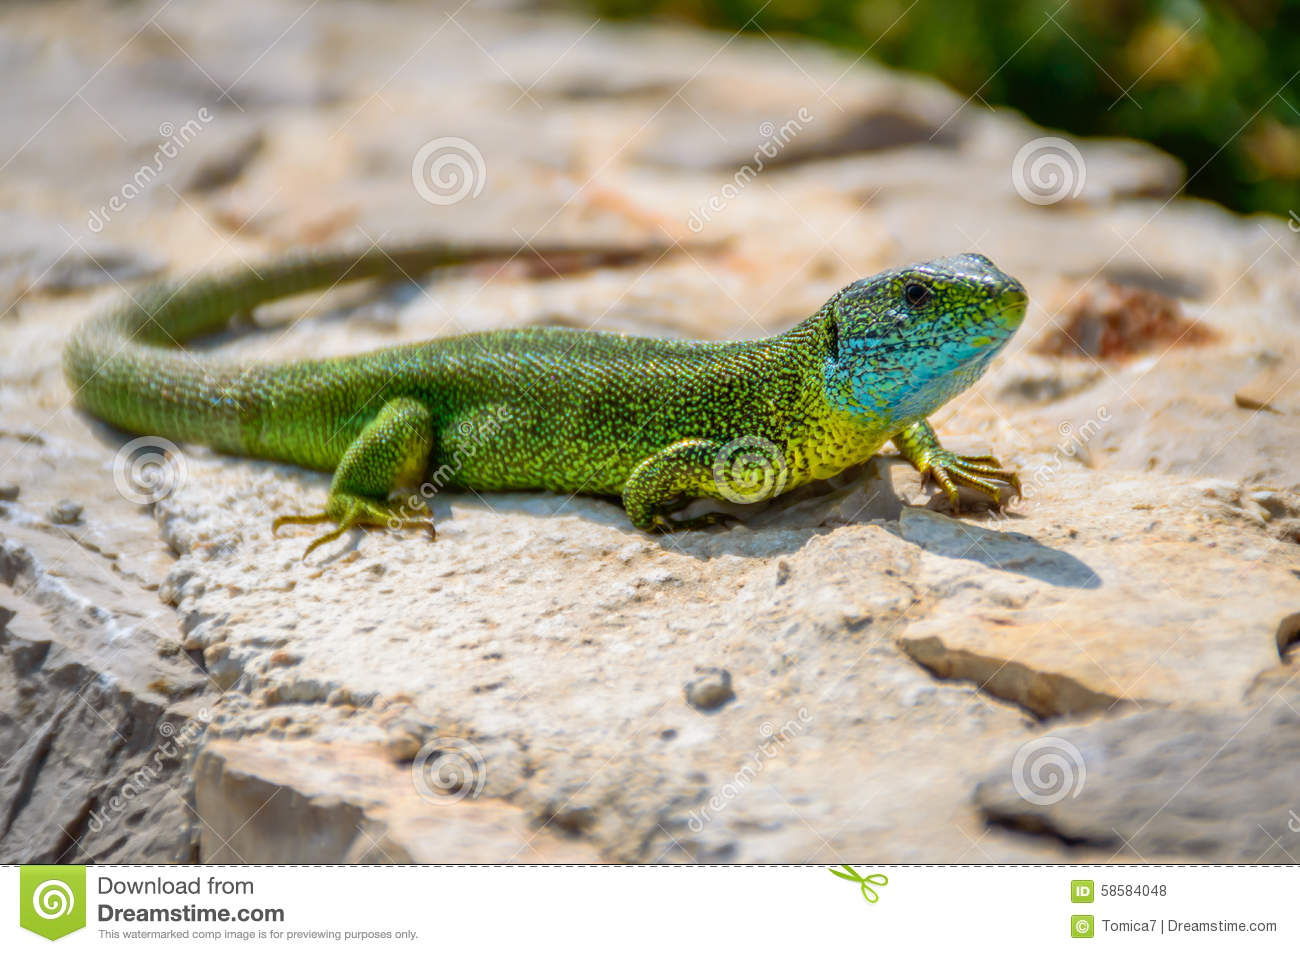 Green Emerald Gecko Lizard Sunbathing On A Rock Stock Photo.